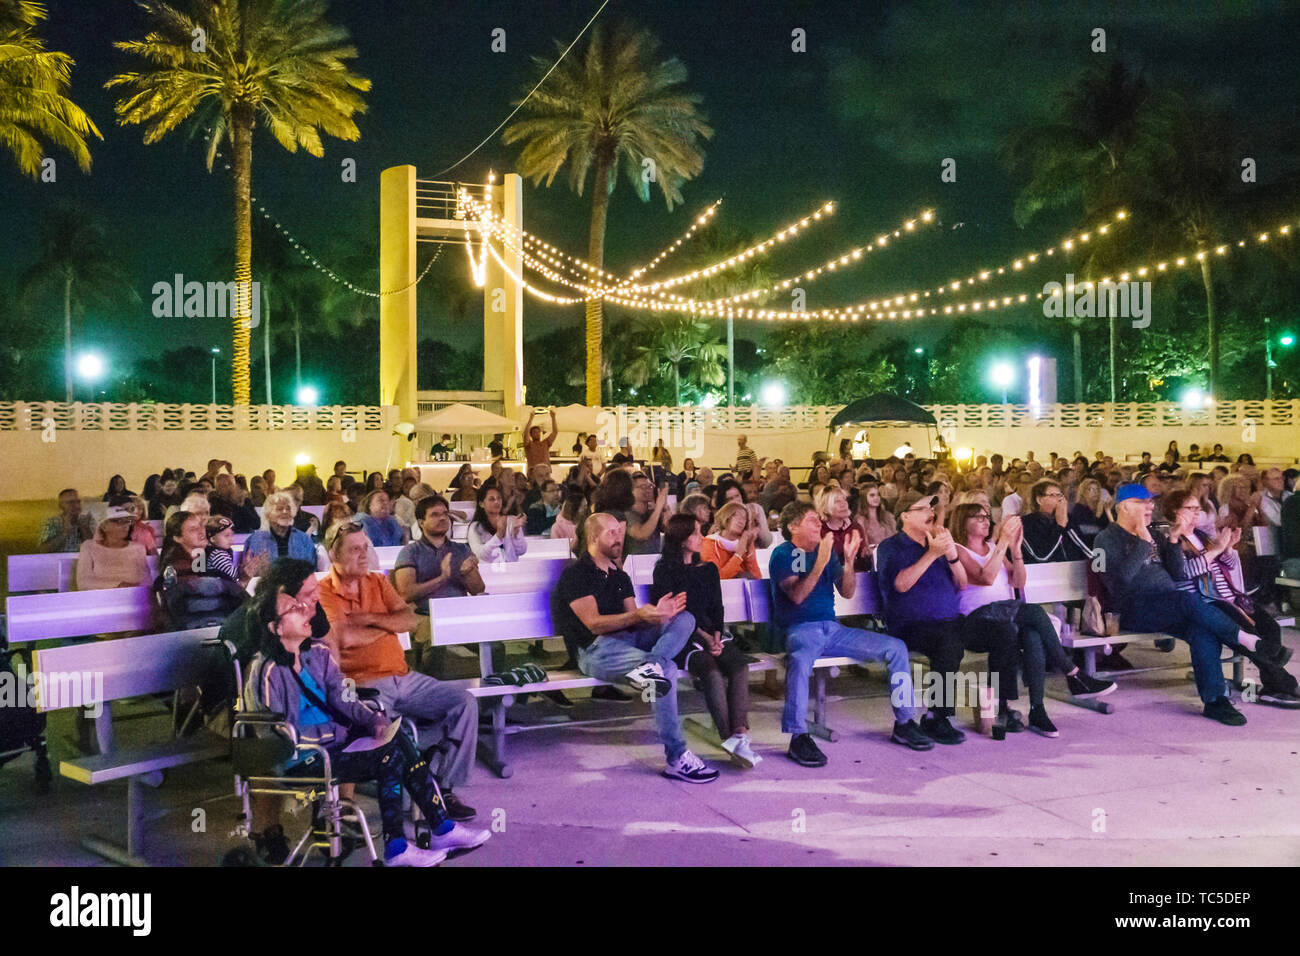 Miami Beach Florida, North Beach Bandshell, Beethoven on the Beach kostenloses Konzert mit klassischer Musik, Gemeindeorchester, Publikum, das applaudieren hört Stockfoto